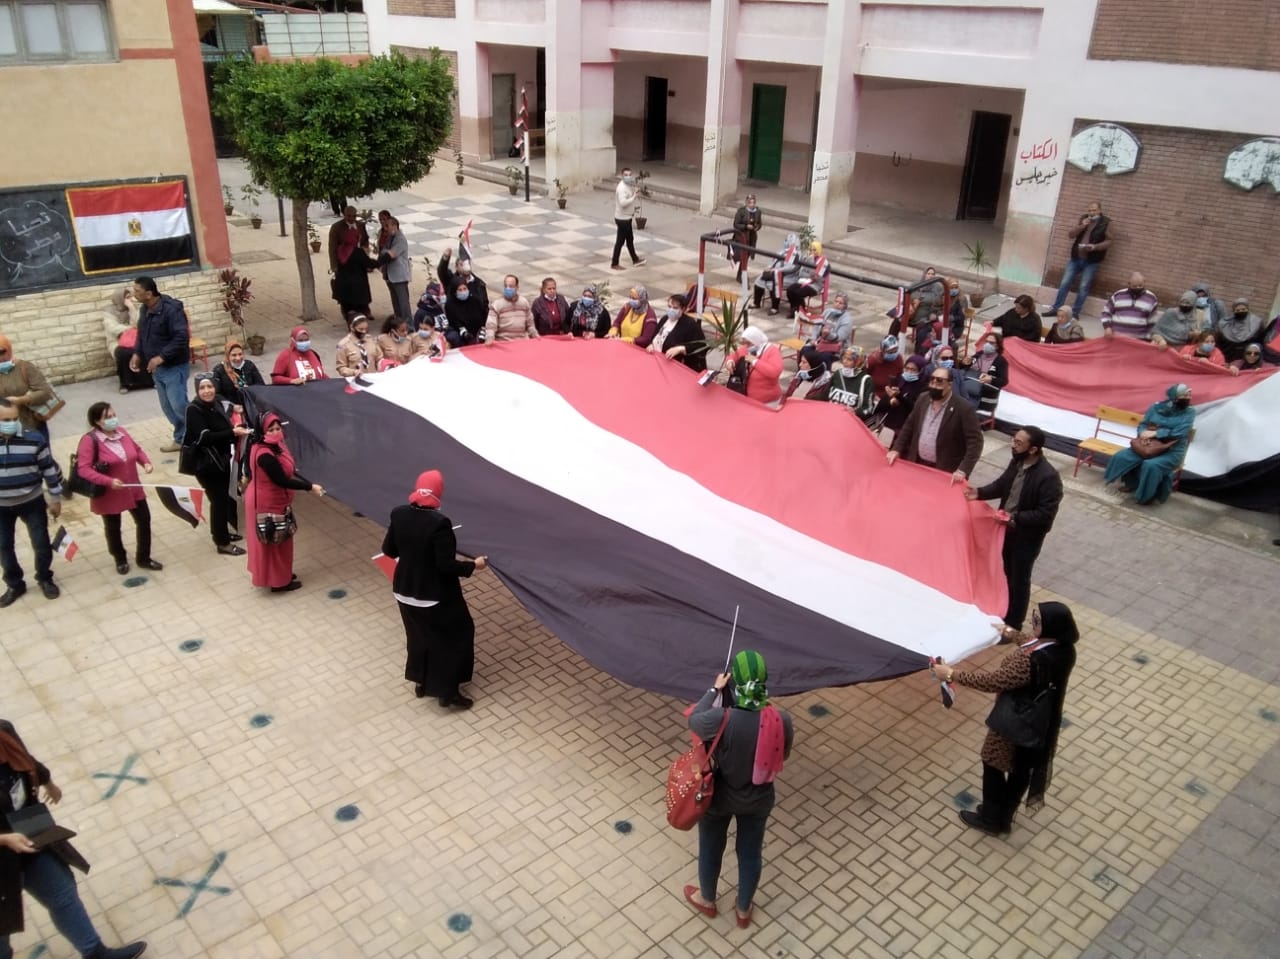   تظاهر في حب مصر أمام اللجان بالإسكندرية